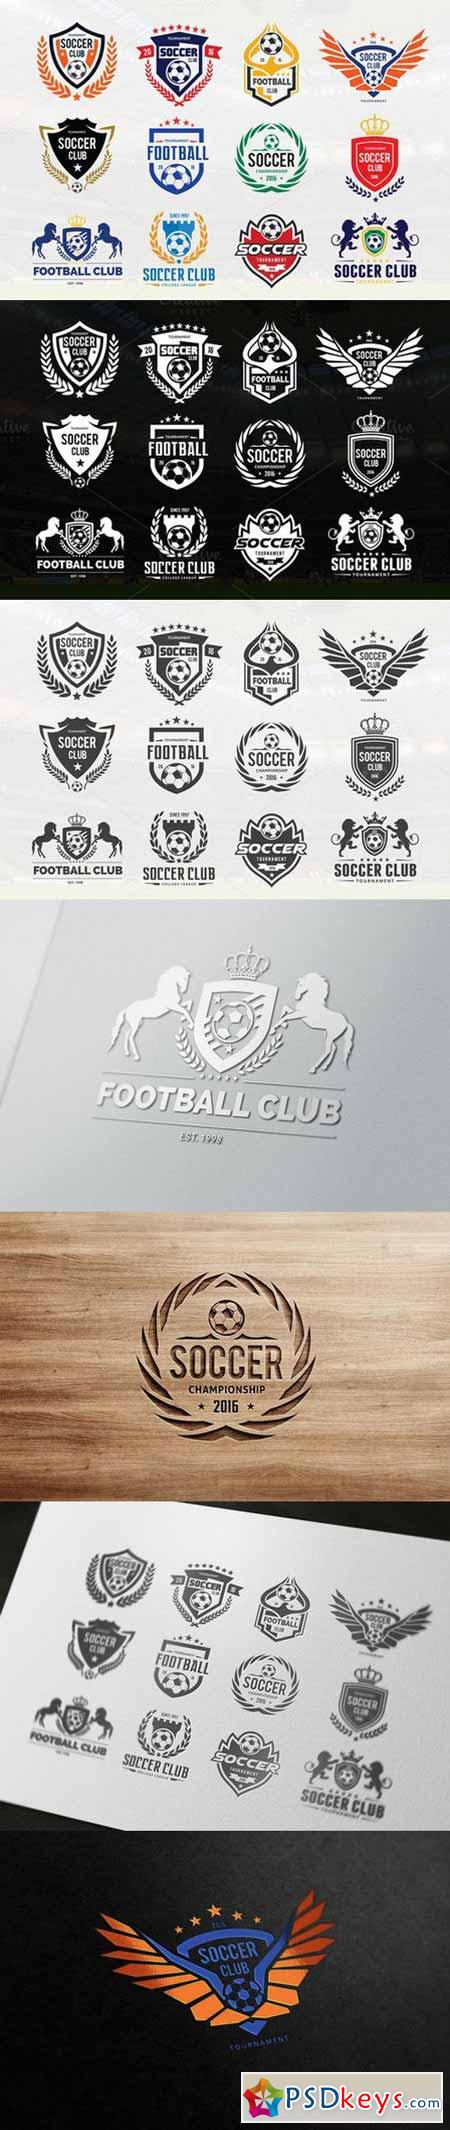 Soccer Logo Football logo collection 620837